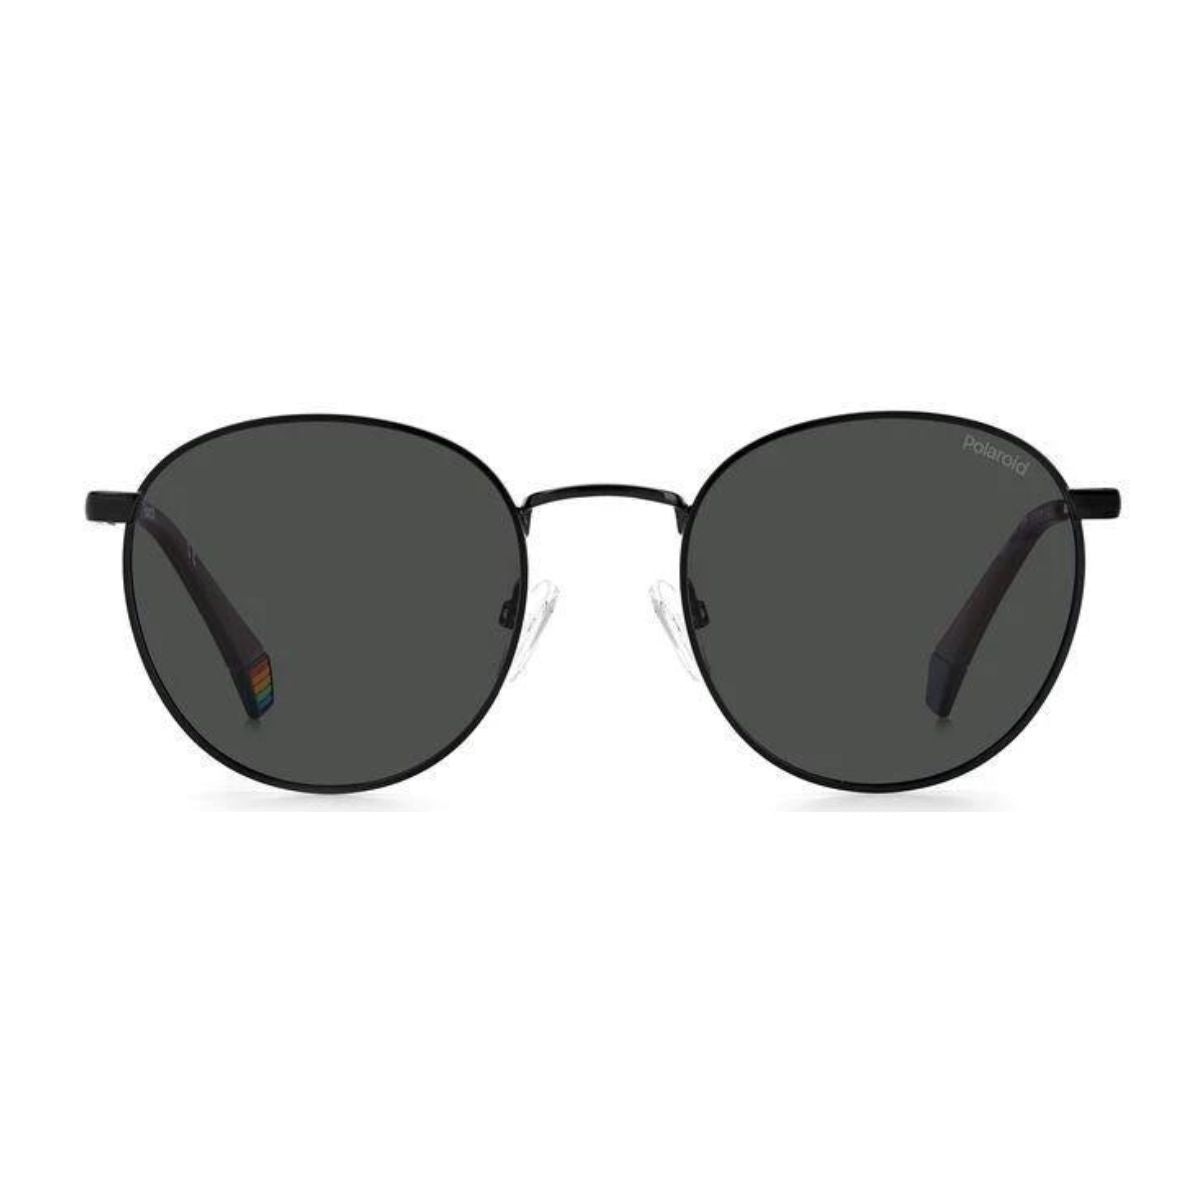 "Buy Polariod 6171S 807 M9 Polarized Sunglasses For Men's At Optorium"